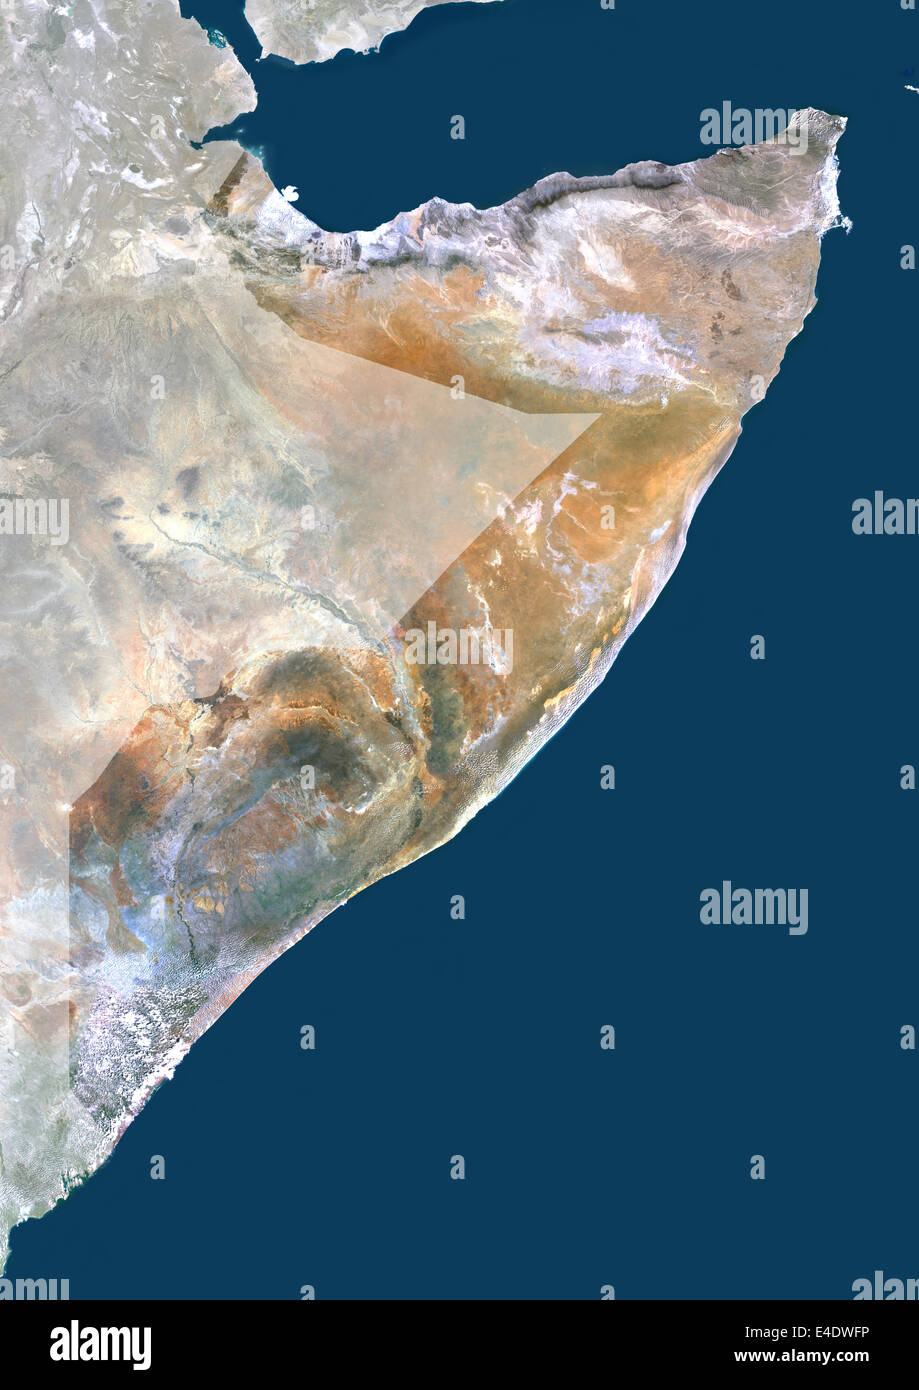 Somalia, Afrika, Echtfarben-Satellitenbild mit Maske. Satellitenansicht von Somalia (mit Maske). Dieses Bild wurde aus Daten erstellt. Stockfoto